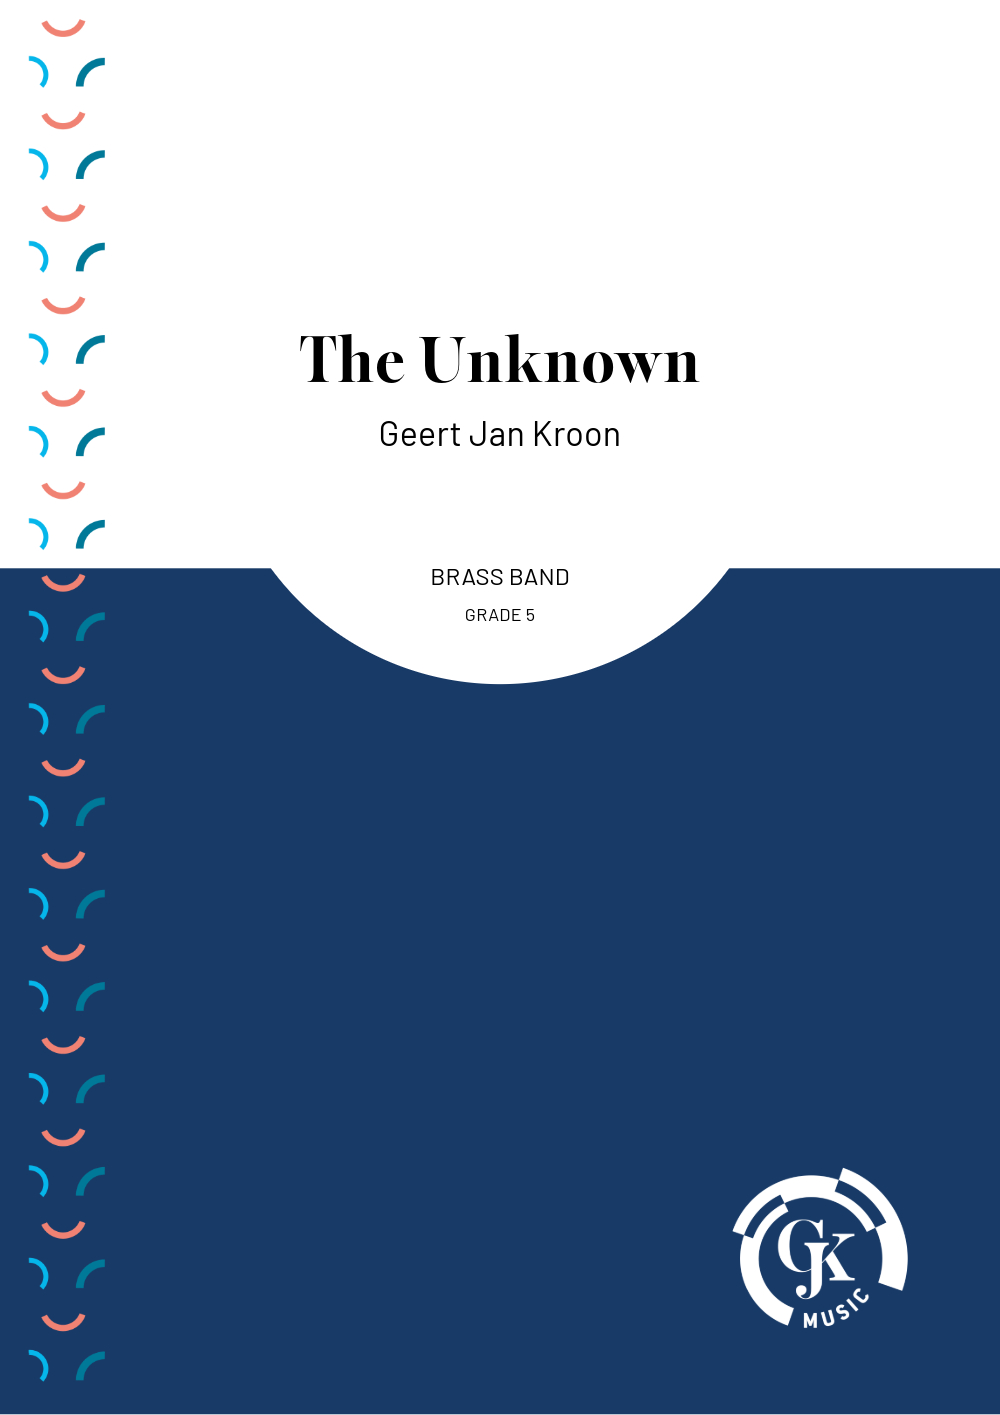 The Unknown voor brassband